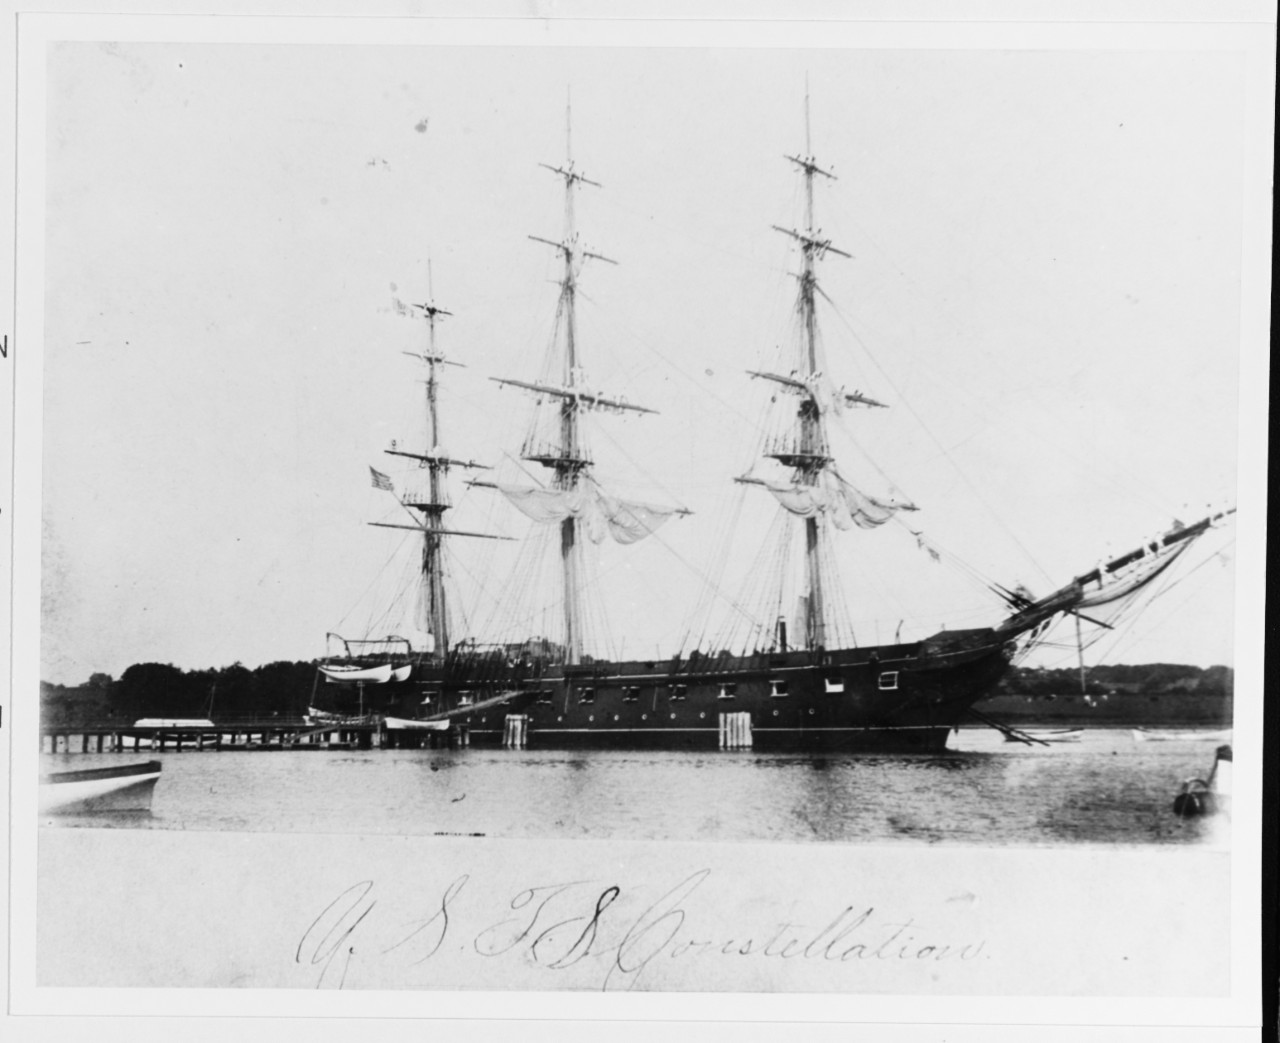 USS CONSTELLATION (1855-1955)